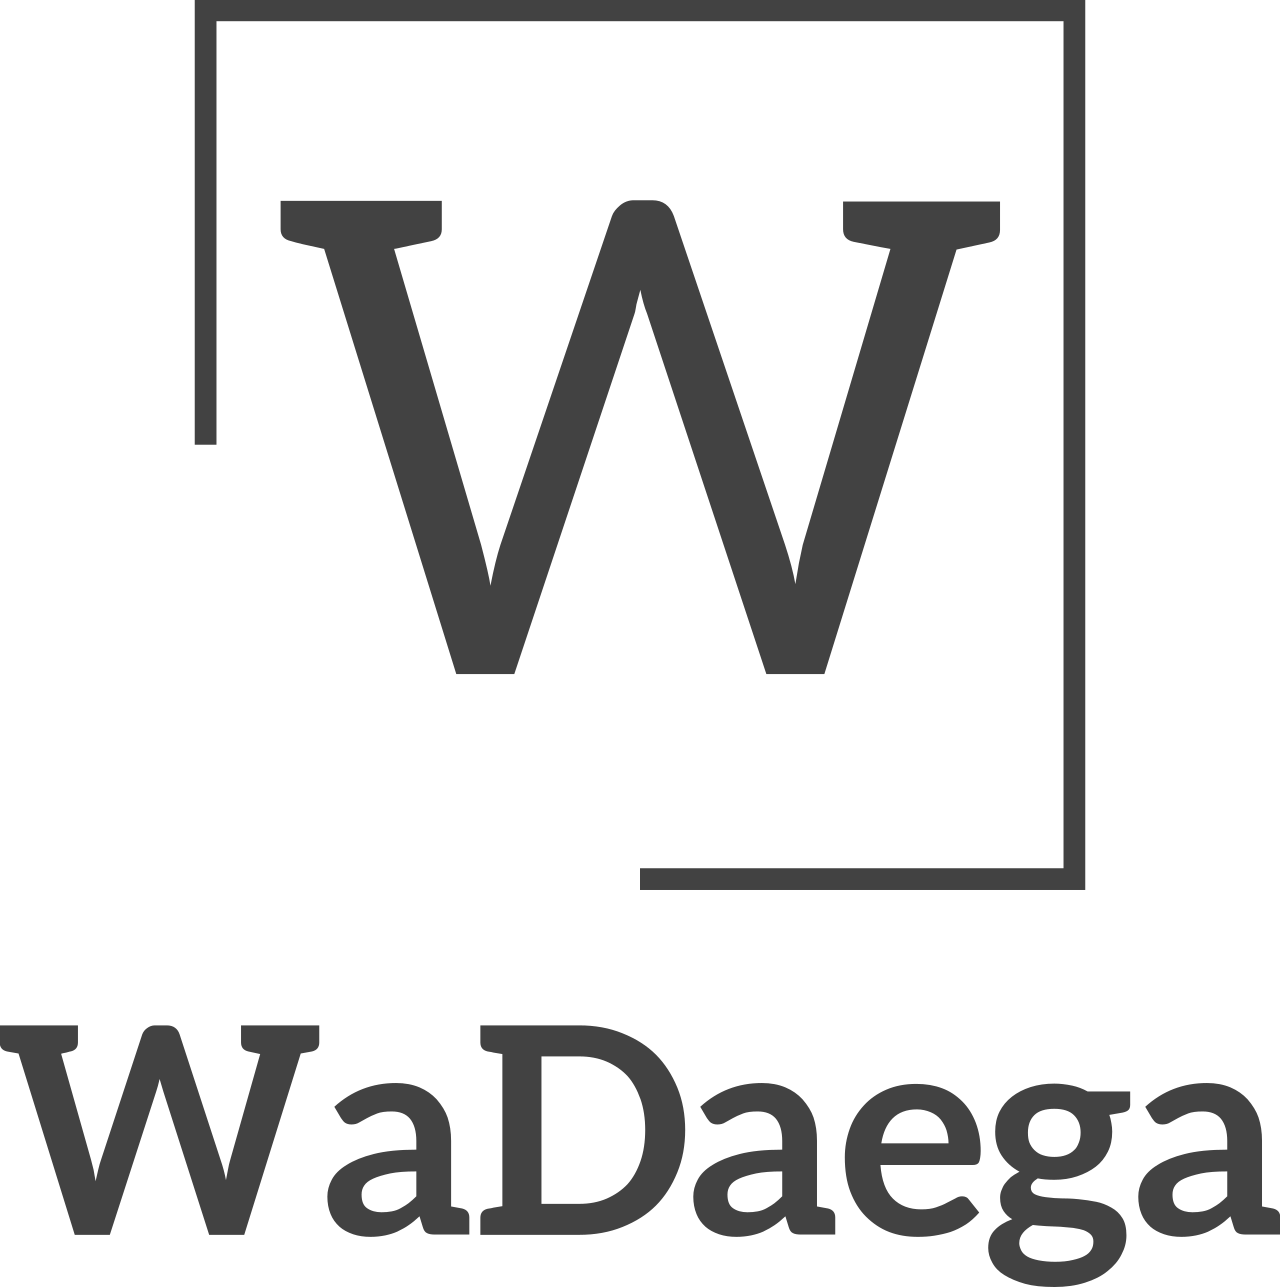 WaDaega's logo